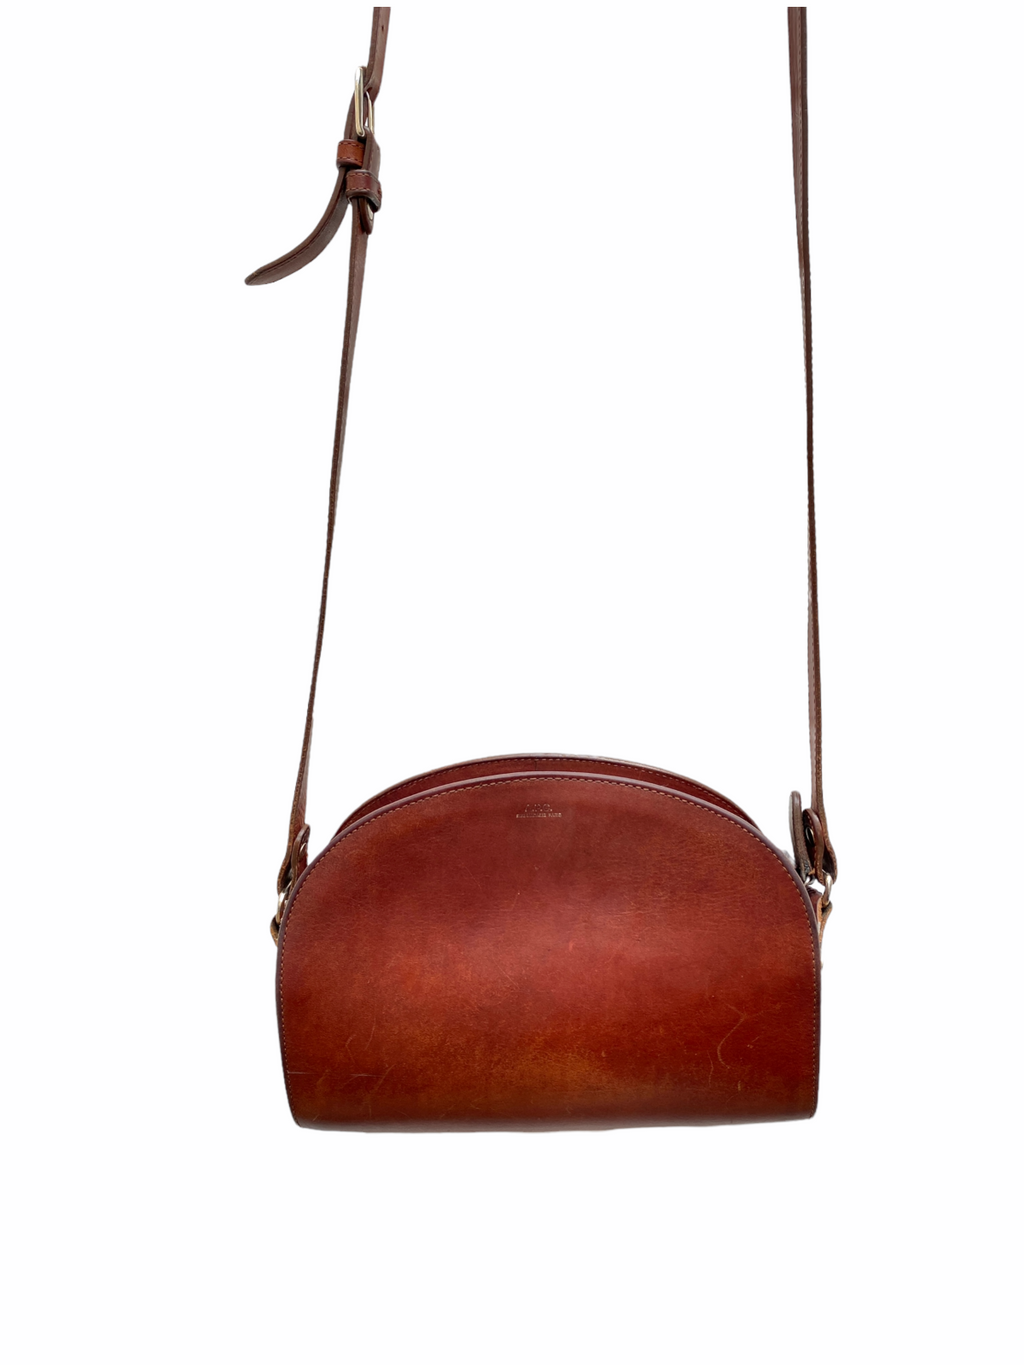 Brown Leather Half Moon Bag